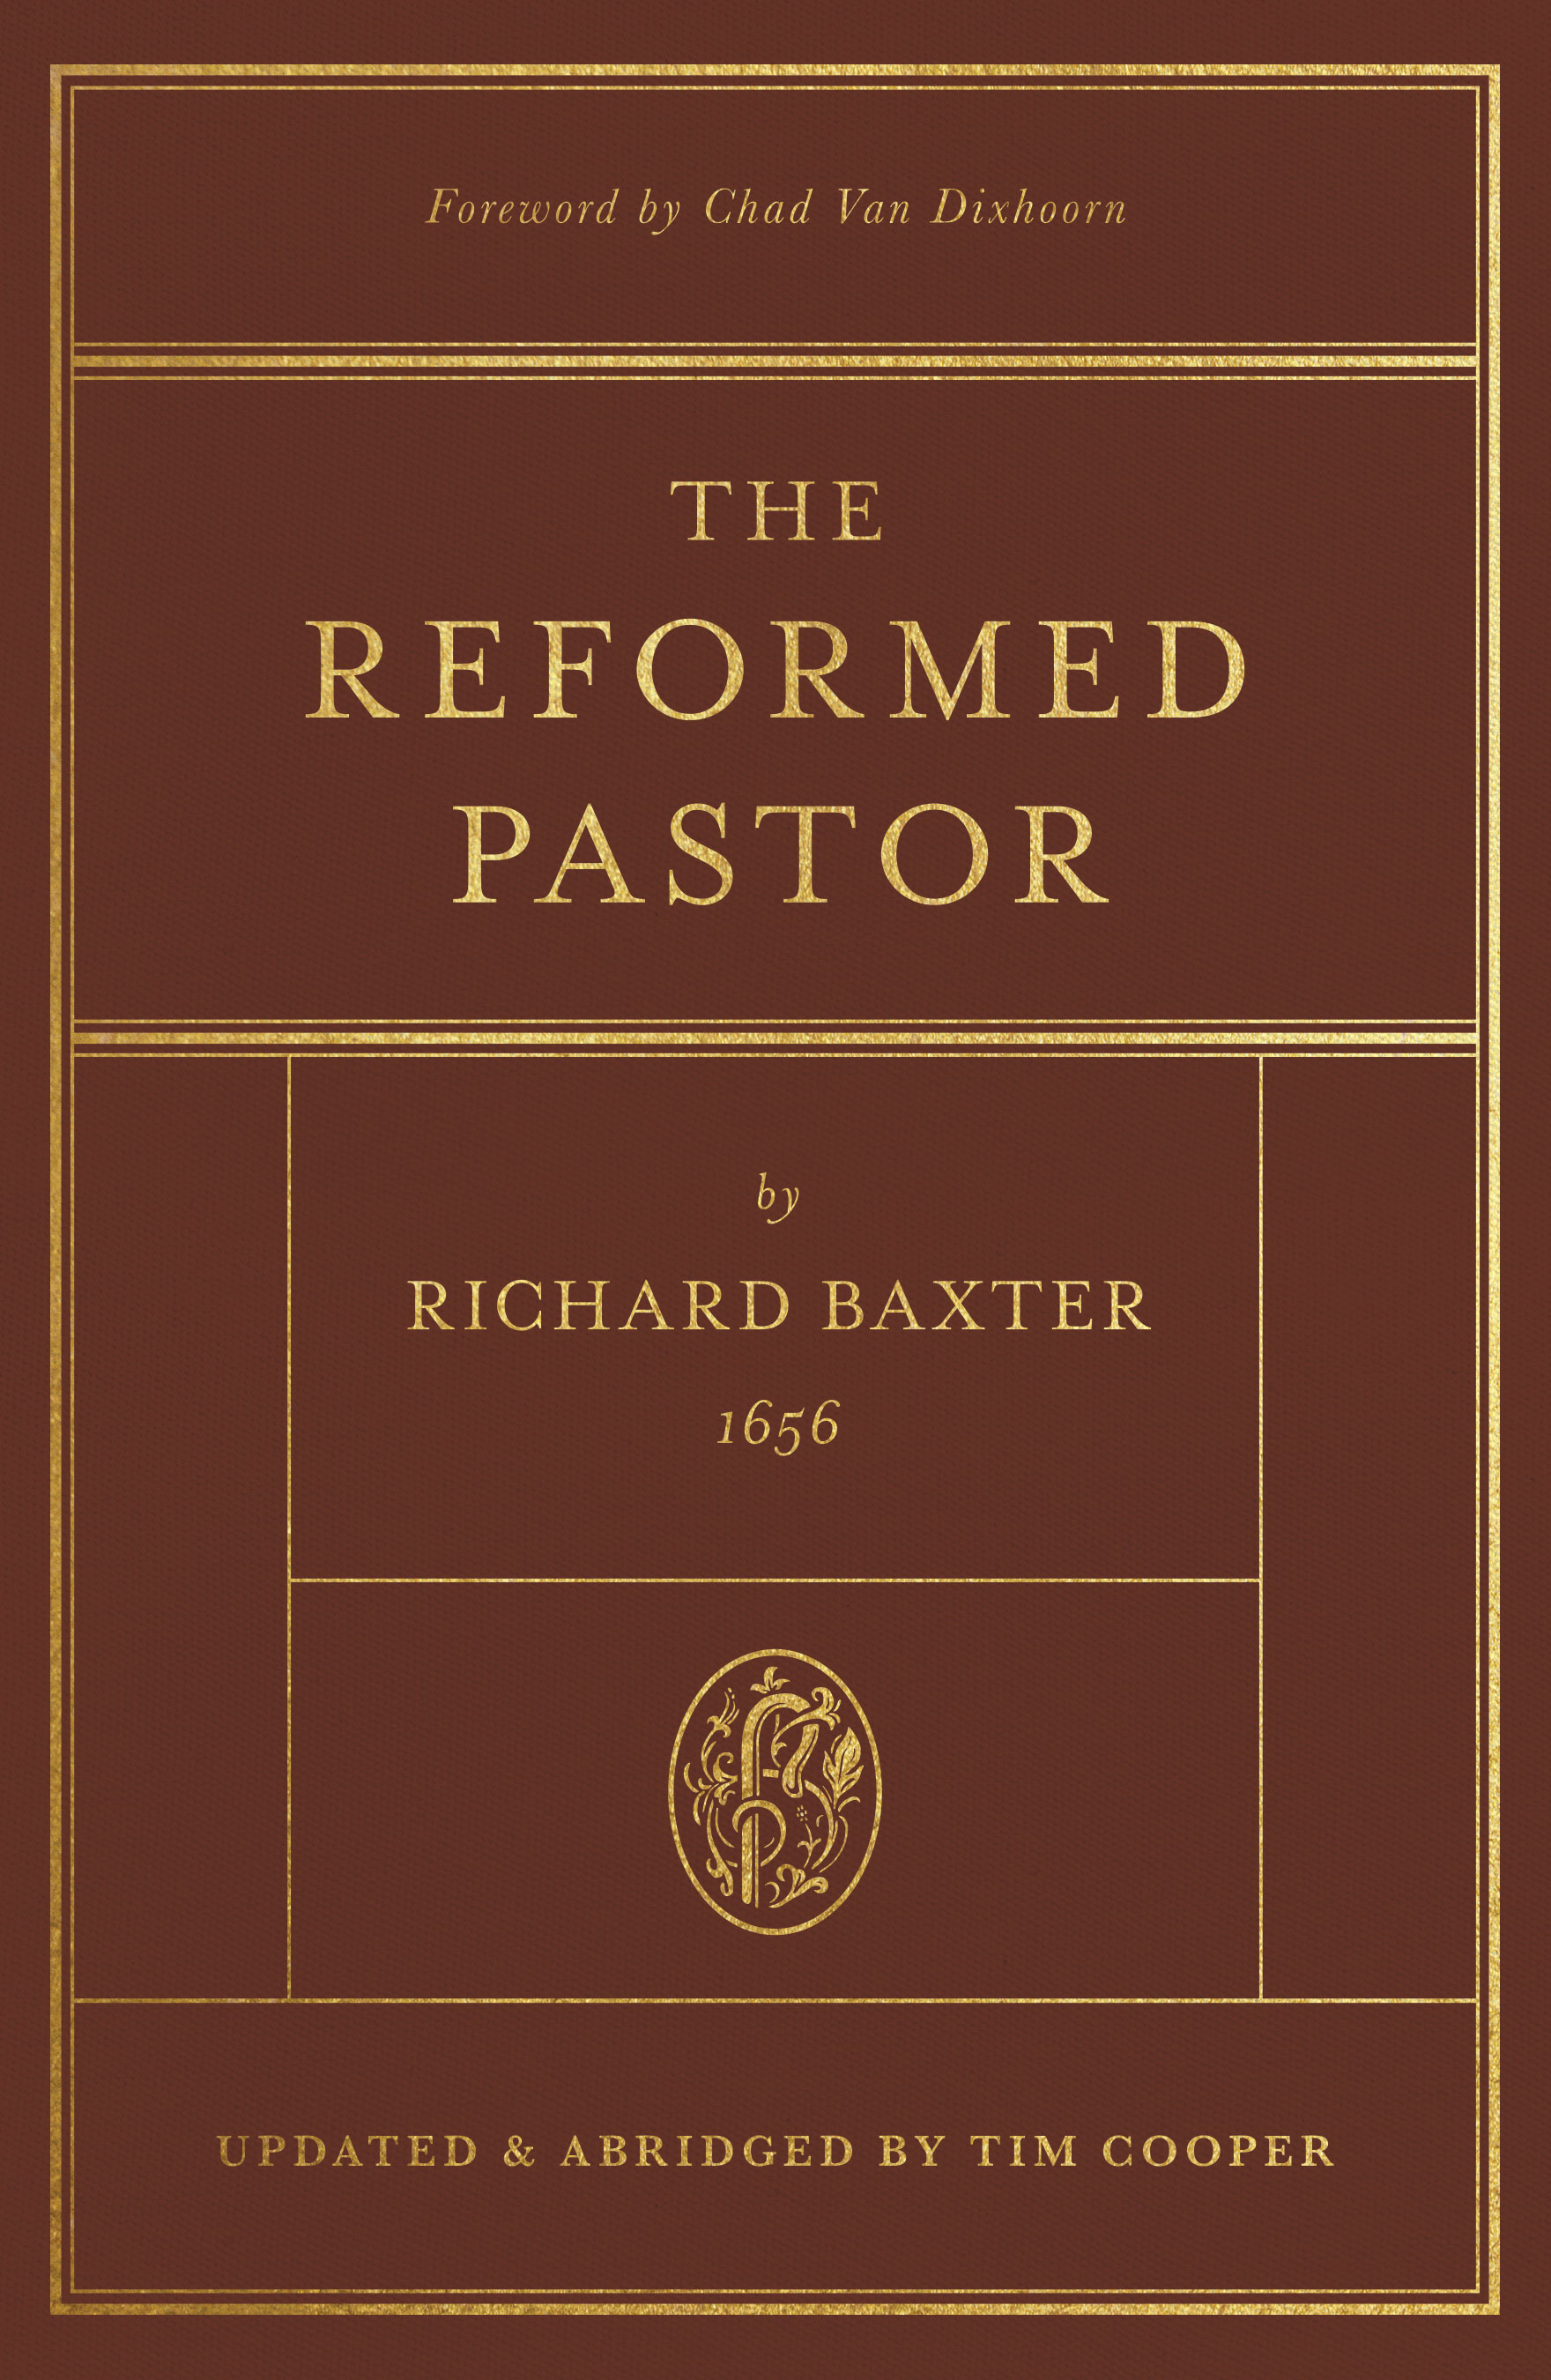 The Reformed Pastor (Foreword by Chad Van Dixhoorn)